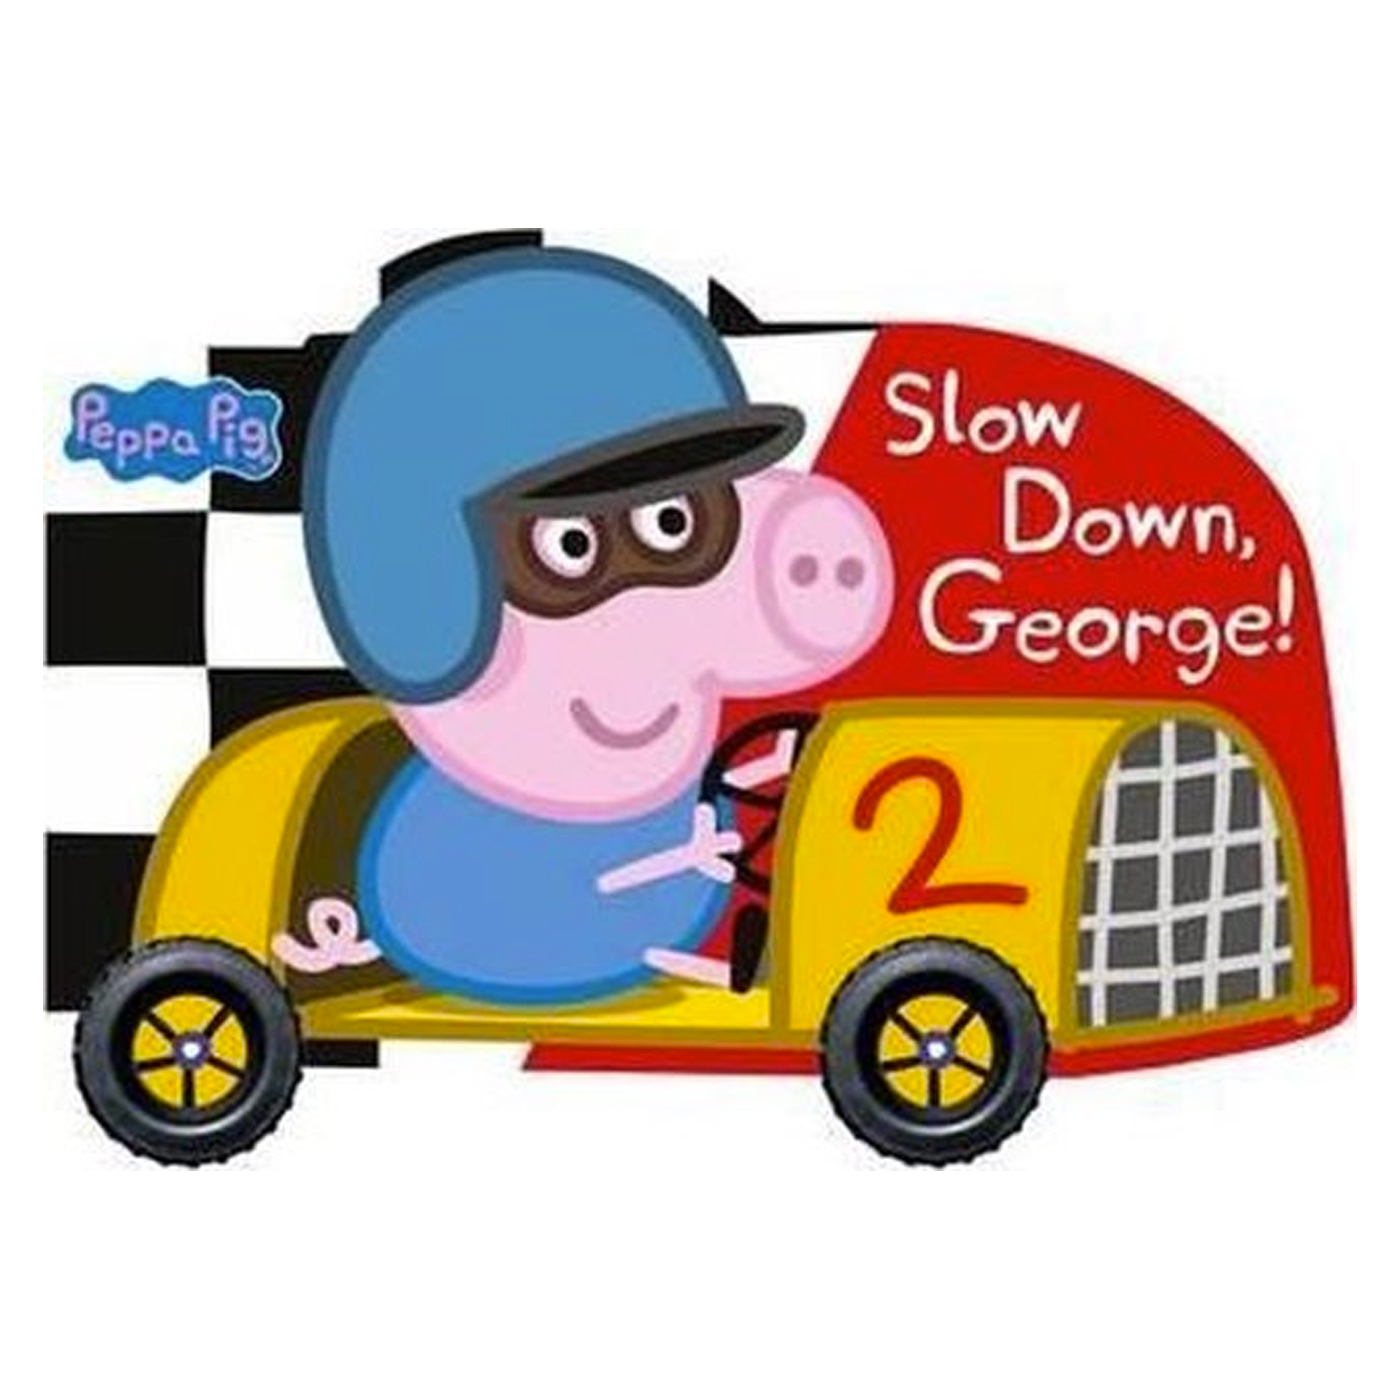 LADYBIRD Peppa Pig Slow Down George